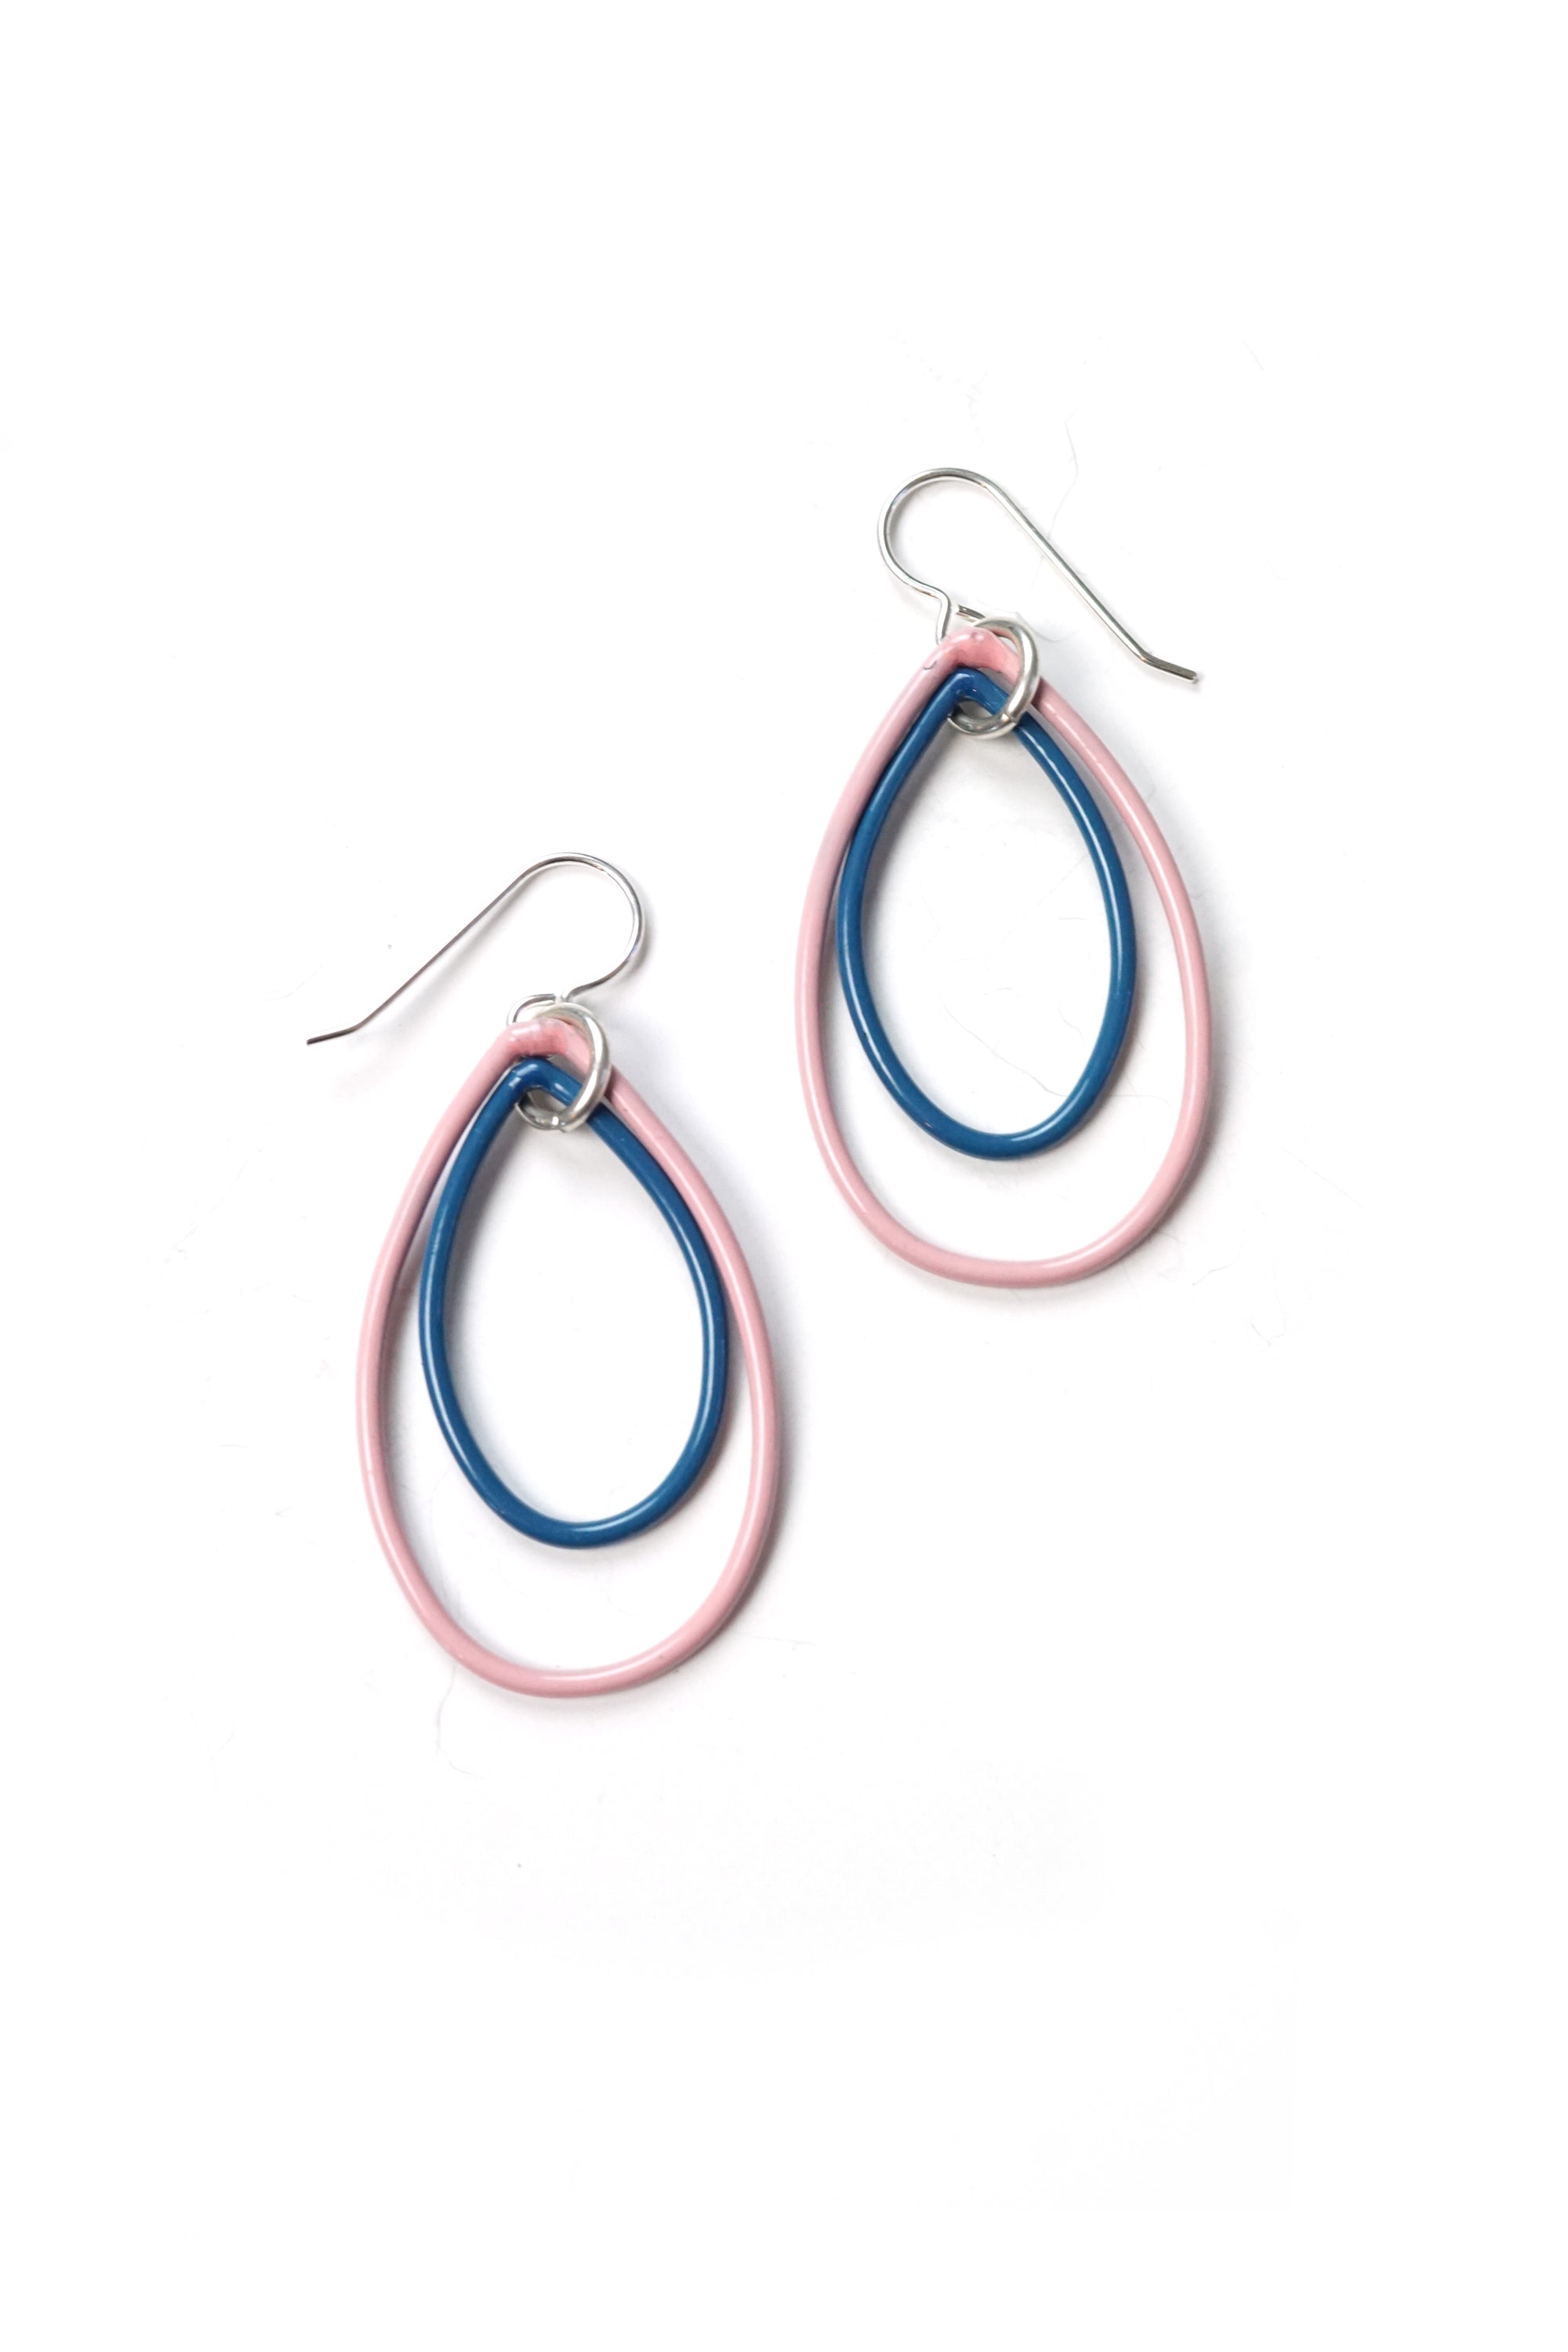 Ella earrings in Bubble Gum and Azure Blue